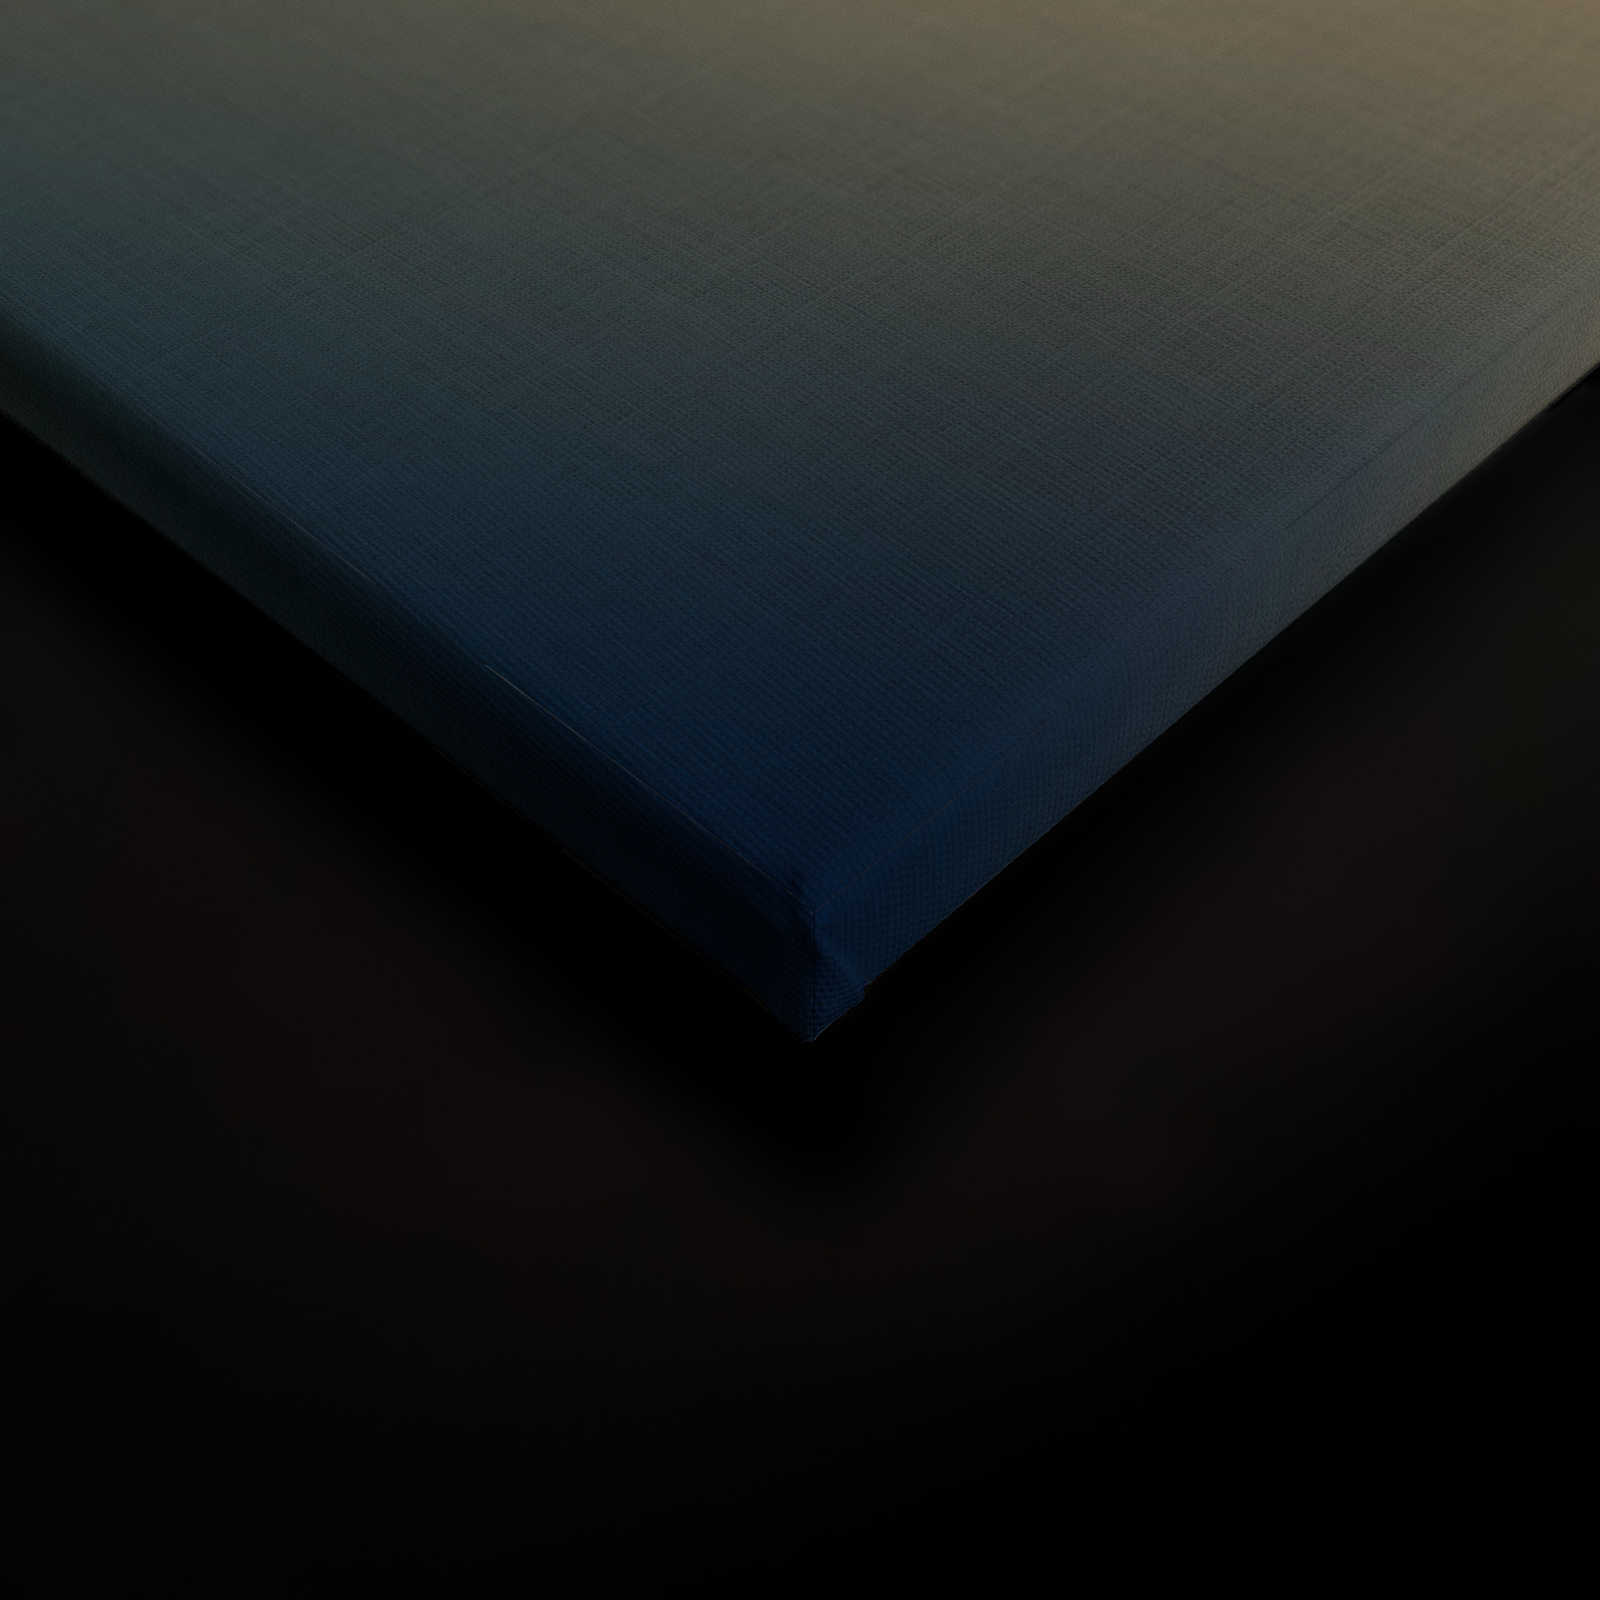             La bohème 2 - Quadro su tela in stile bohémien nei toni del beige - struttura in lino naturale - 0,90 m x 0,60 m
        